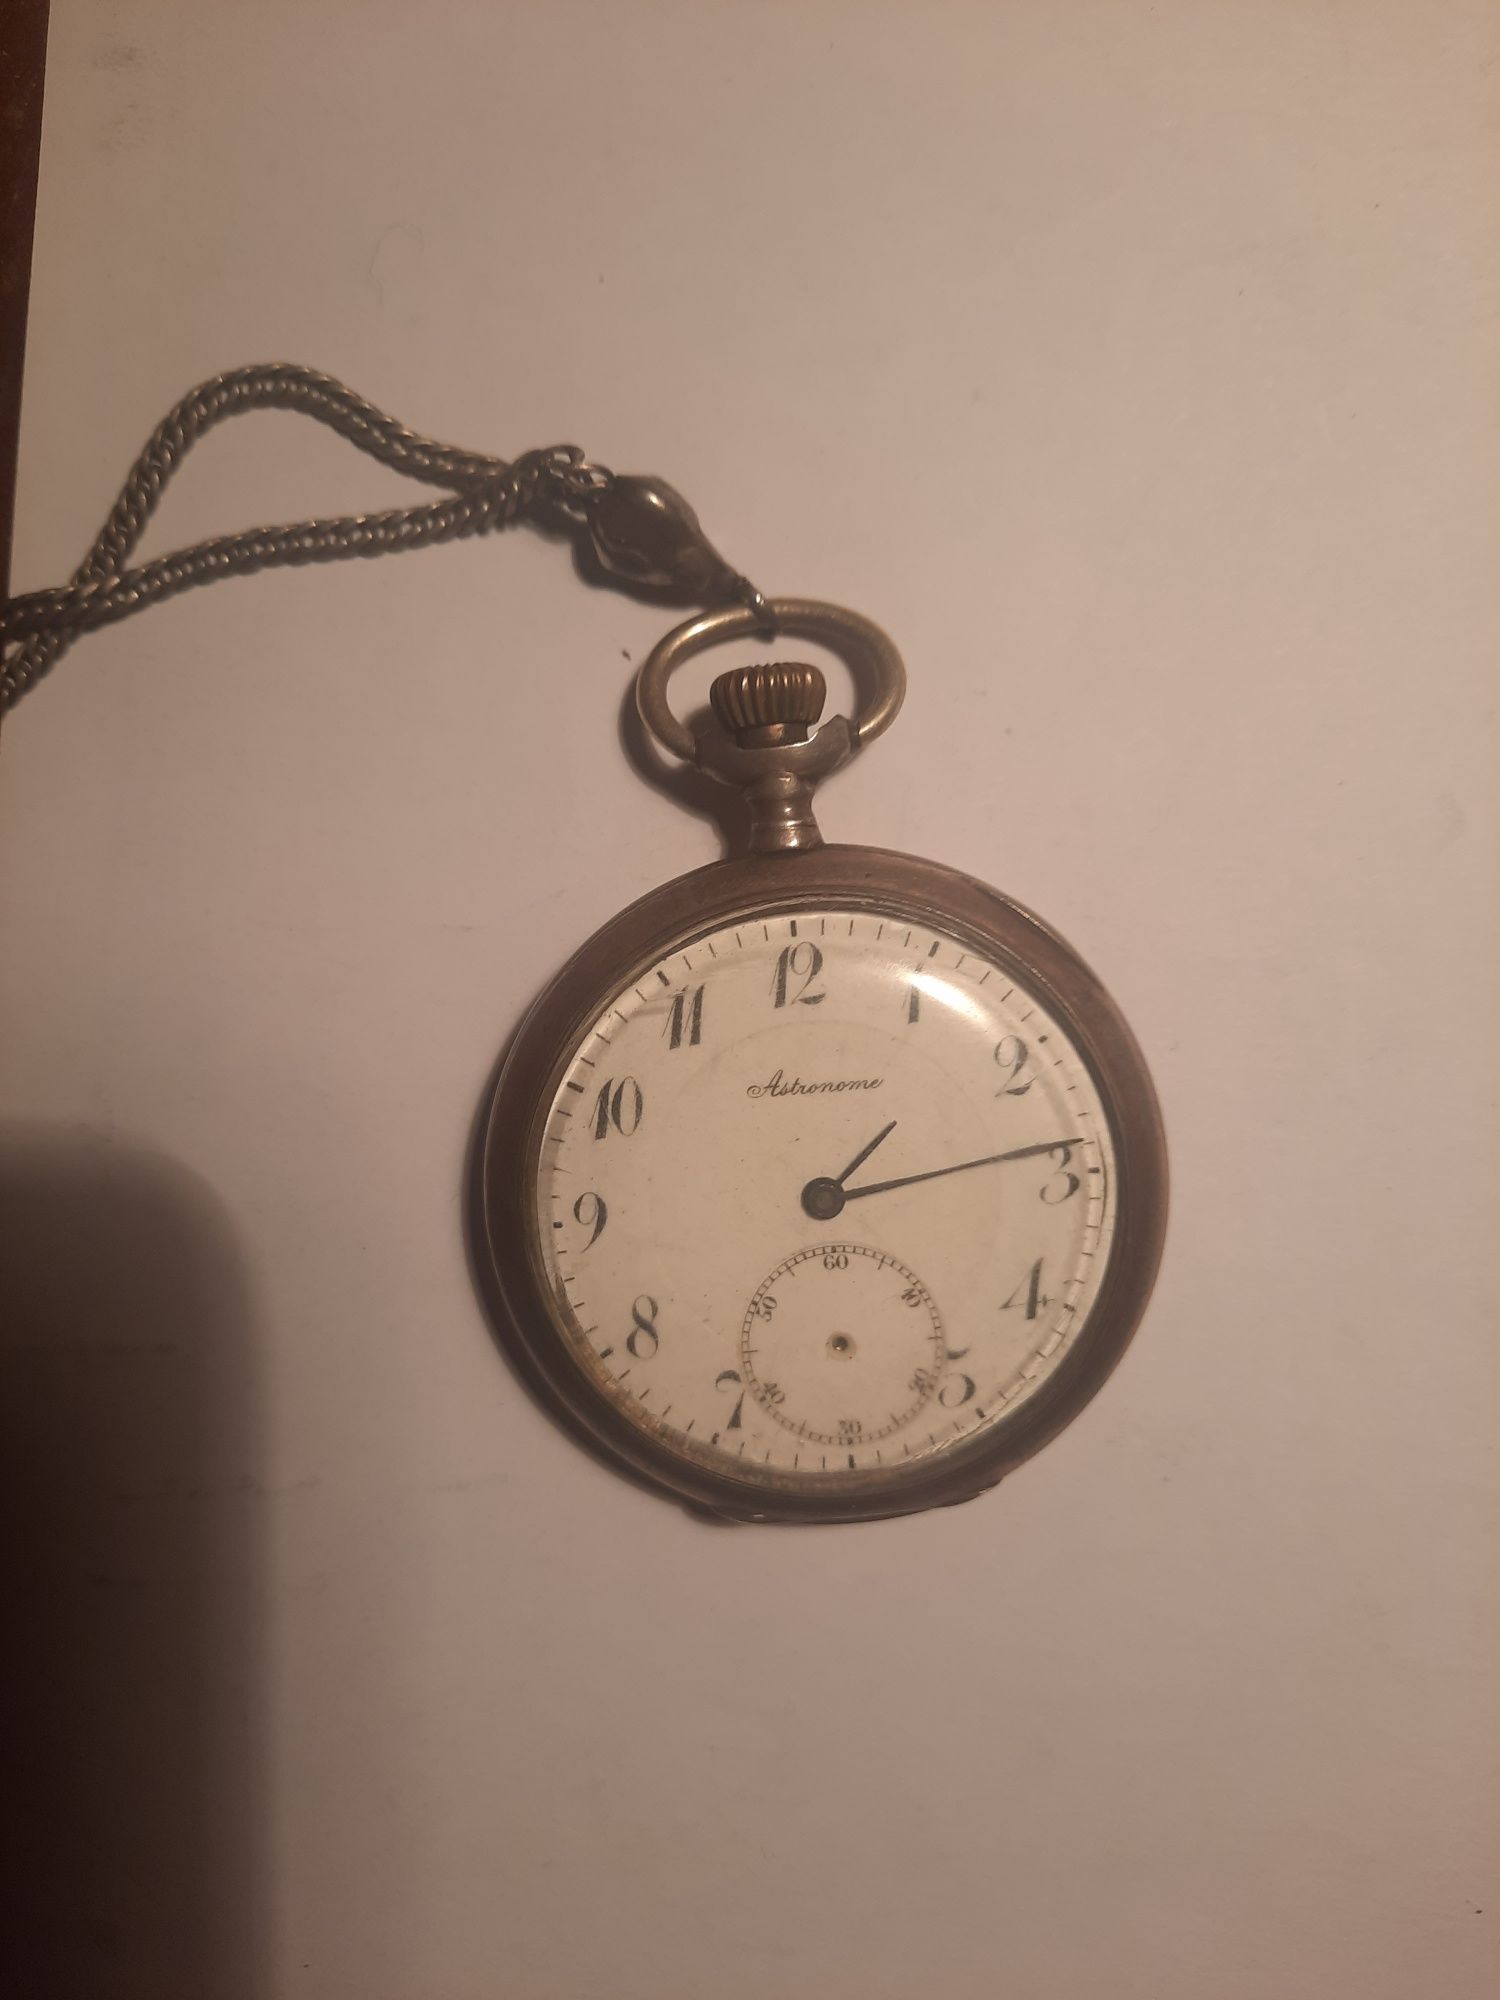 Продам рідкісний кишеньковий годинник марки ASTRONOME